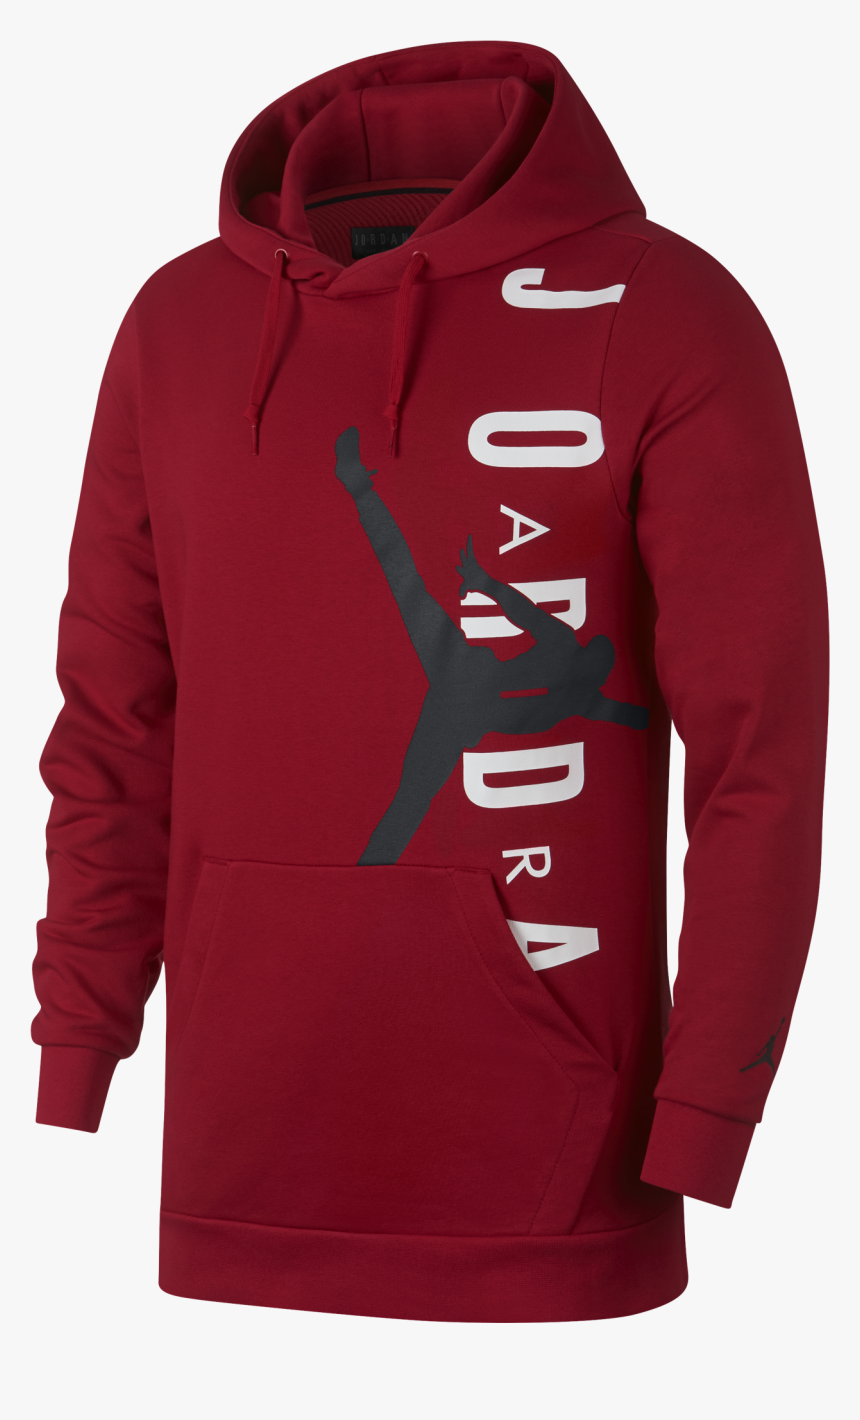 Air Jordan Jumpman Air Lightweight Hoodie - Red Nike Jordan Sweatshirt, HD Png Download, Free Download